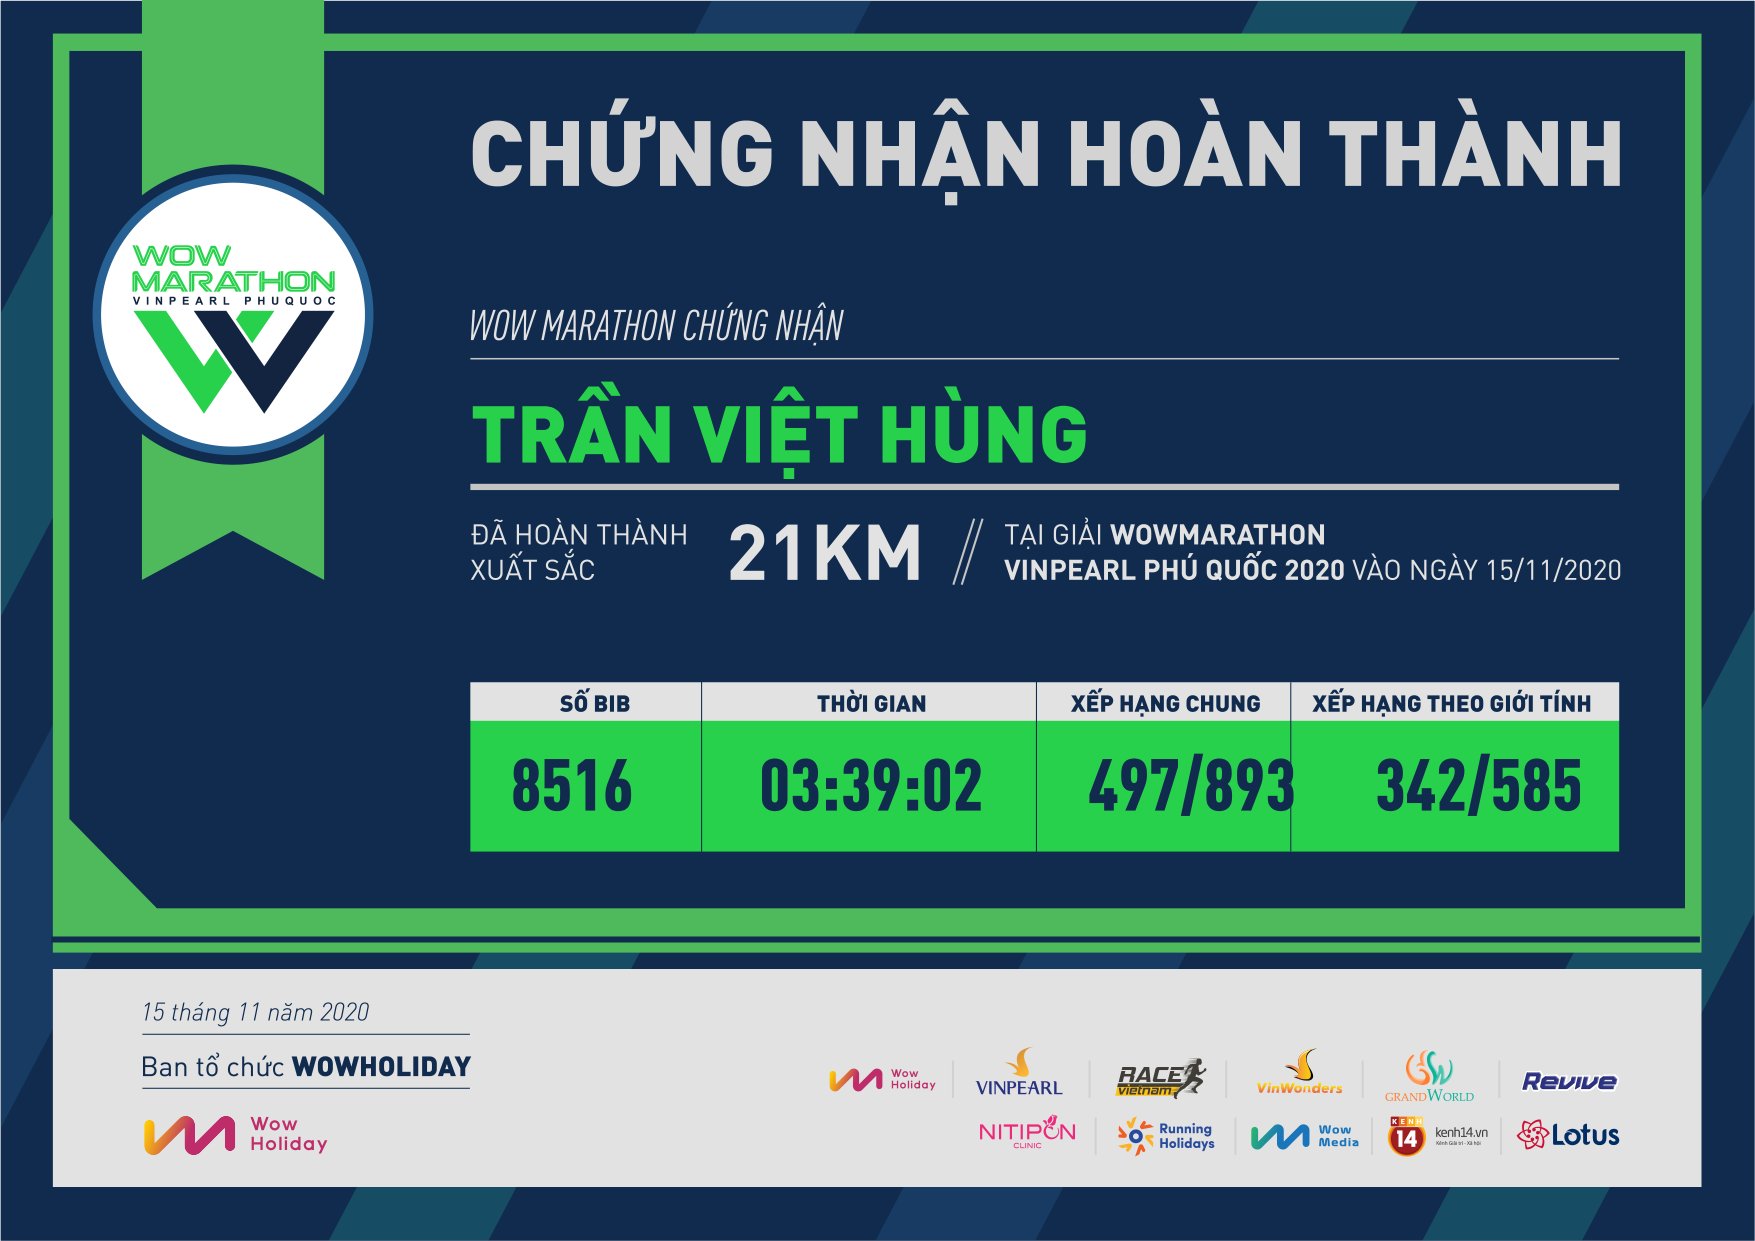 8516 - Trần Việt Hùng